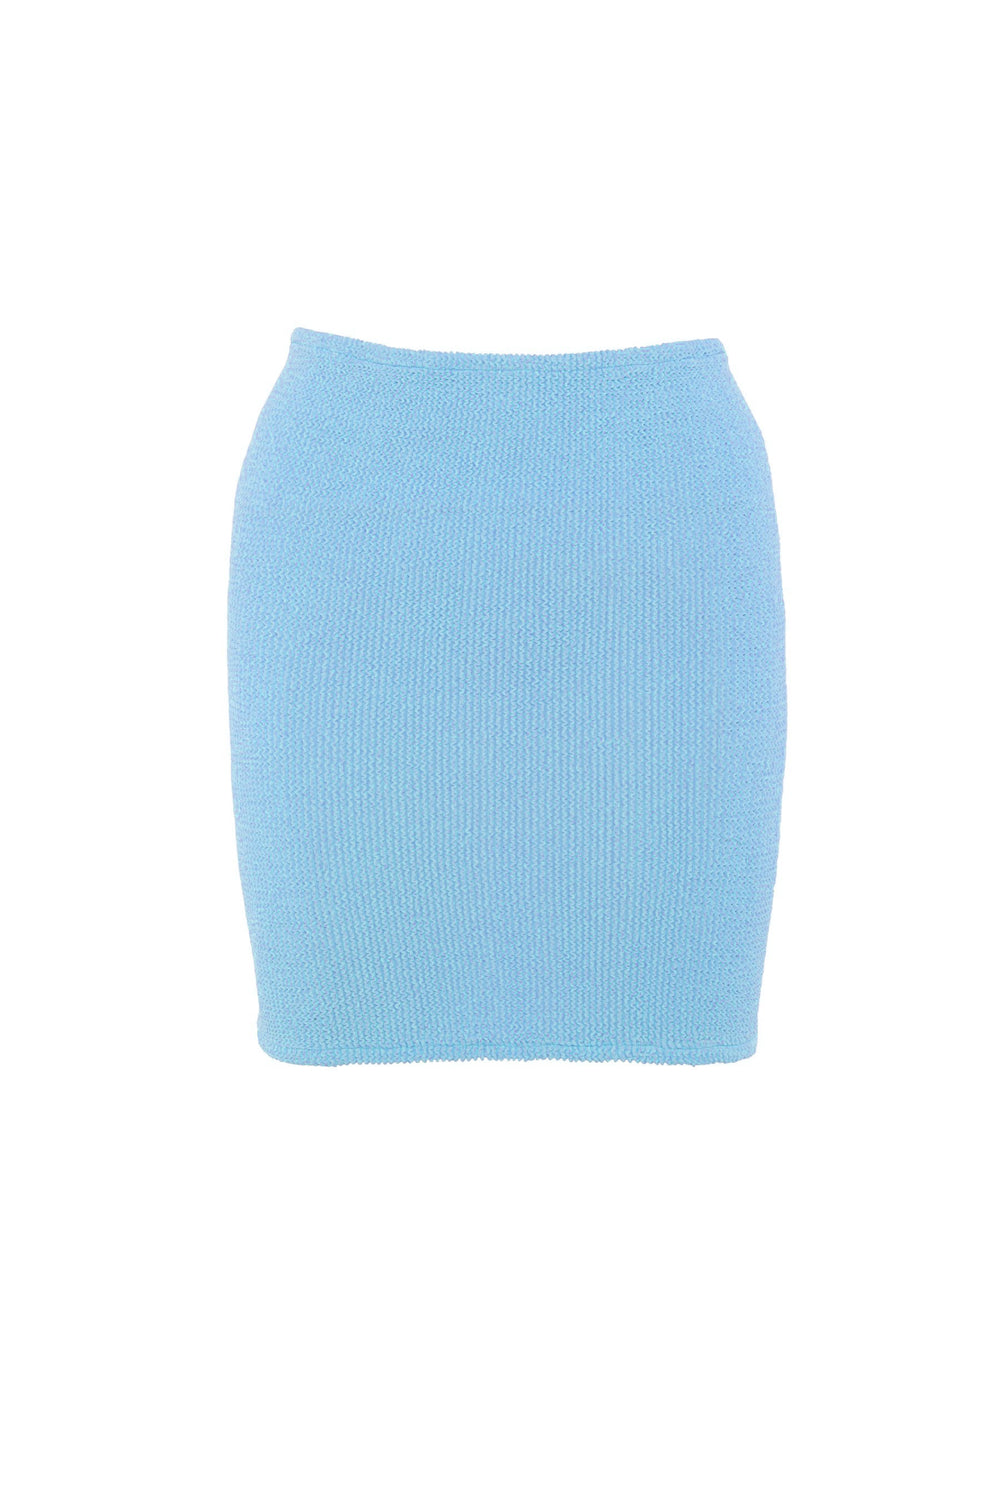 Baby Blue Mini Skirt